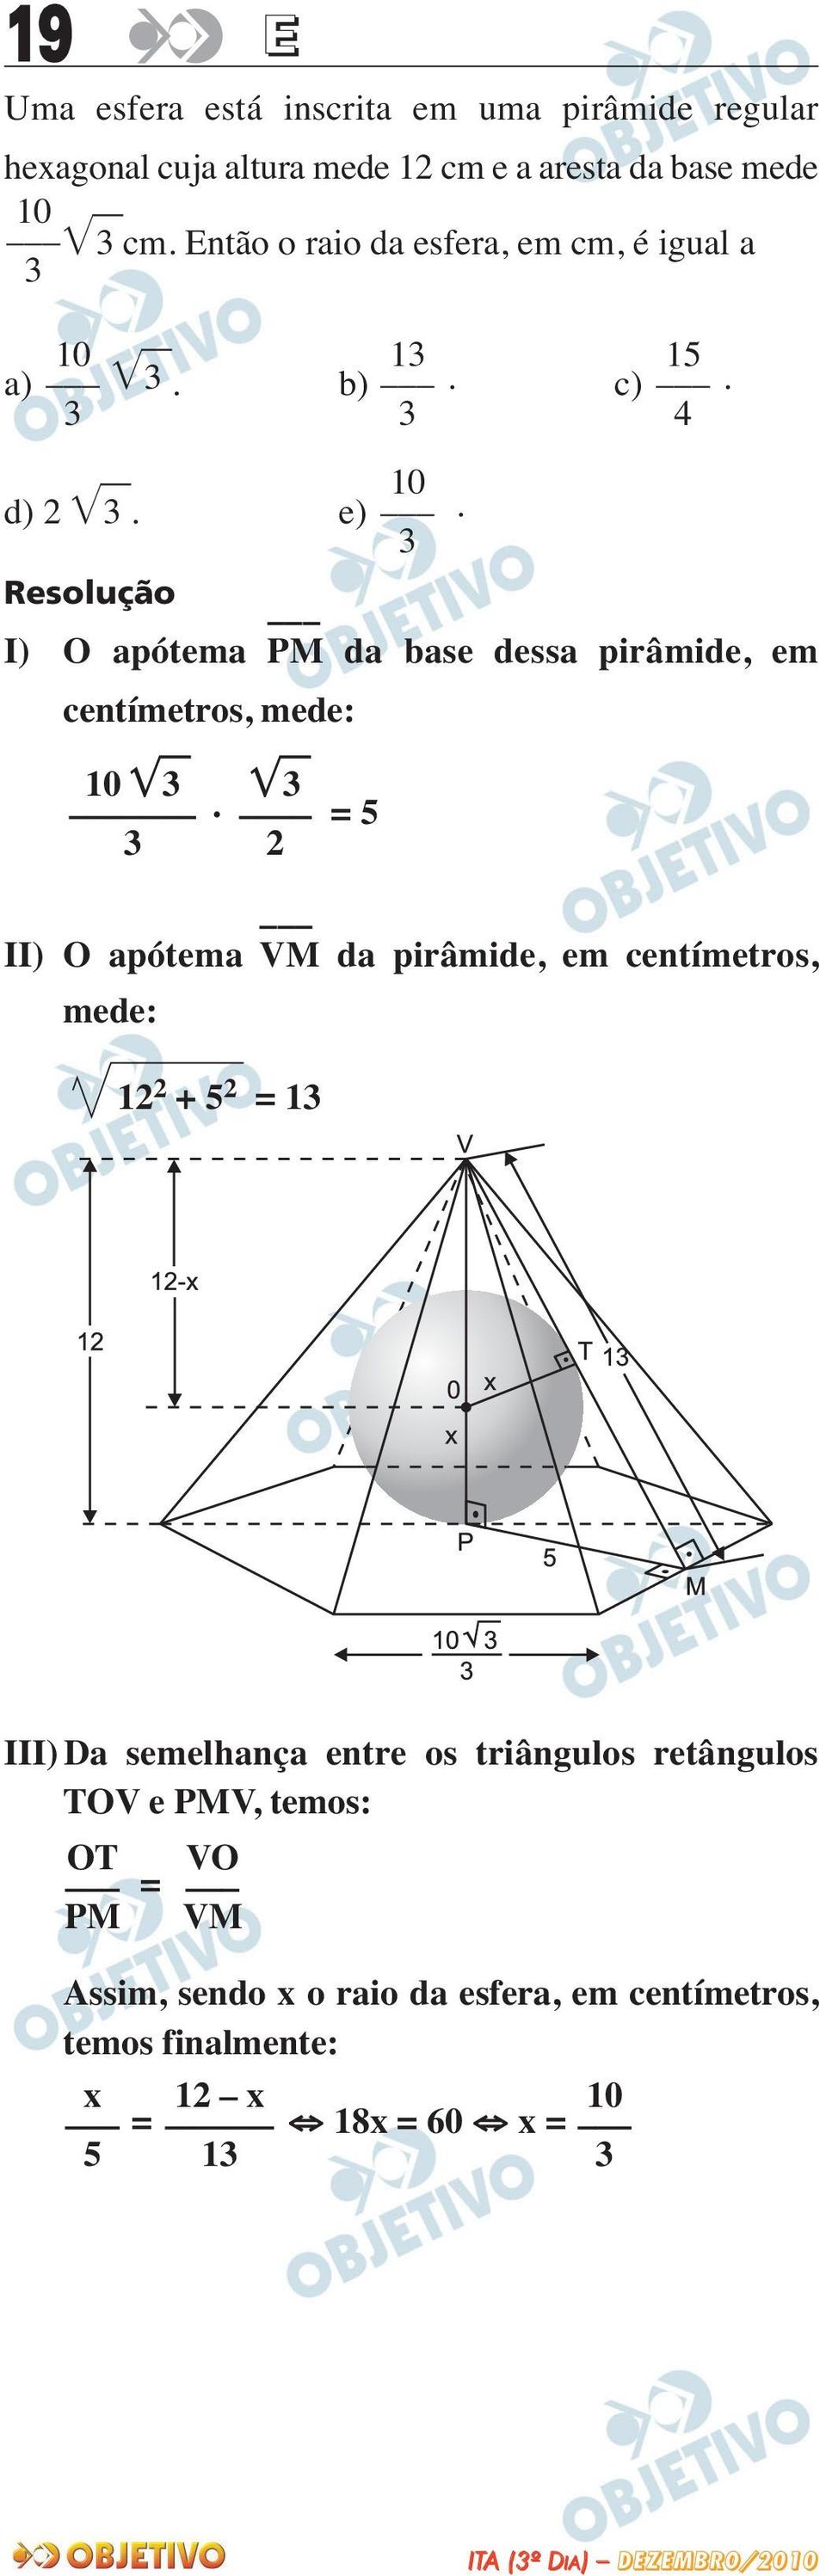 I) O apótema PM da base dessa pirâmide, em centímetros, mede: 0.